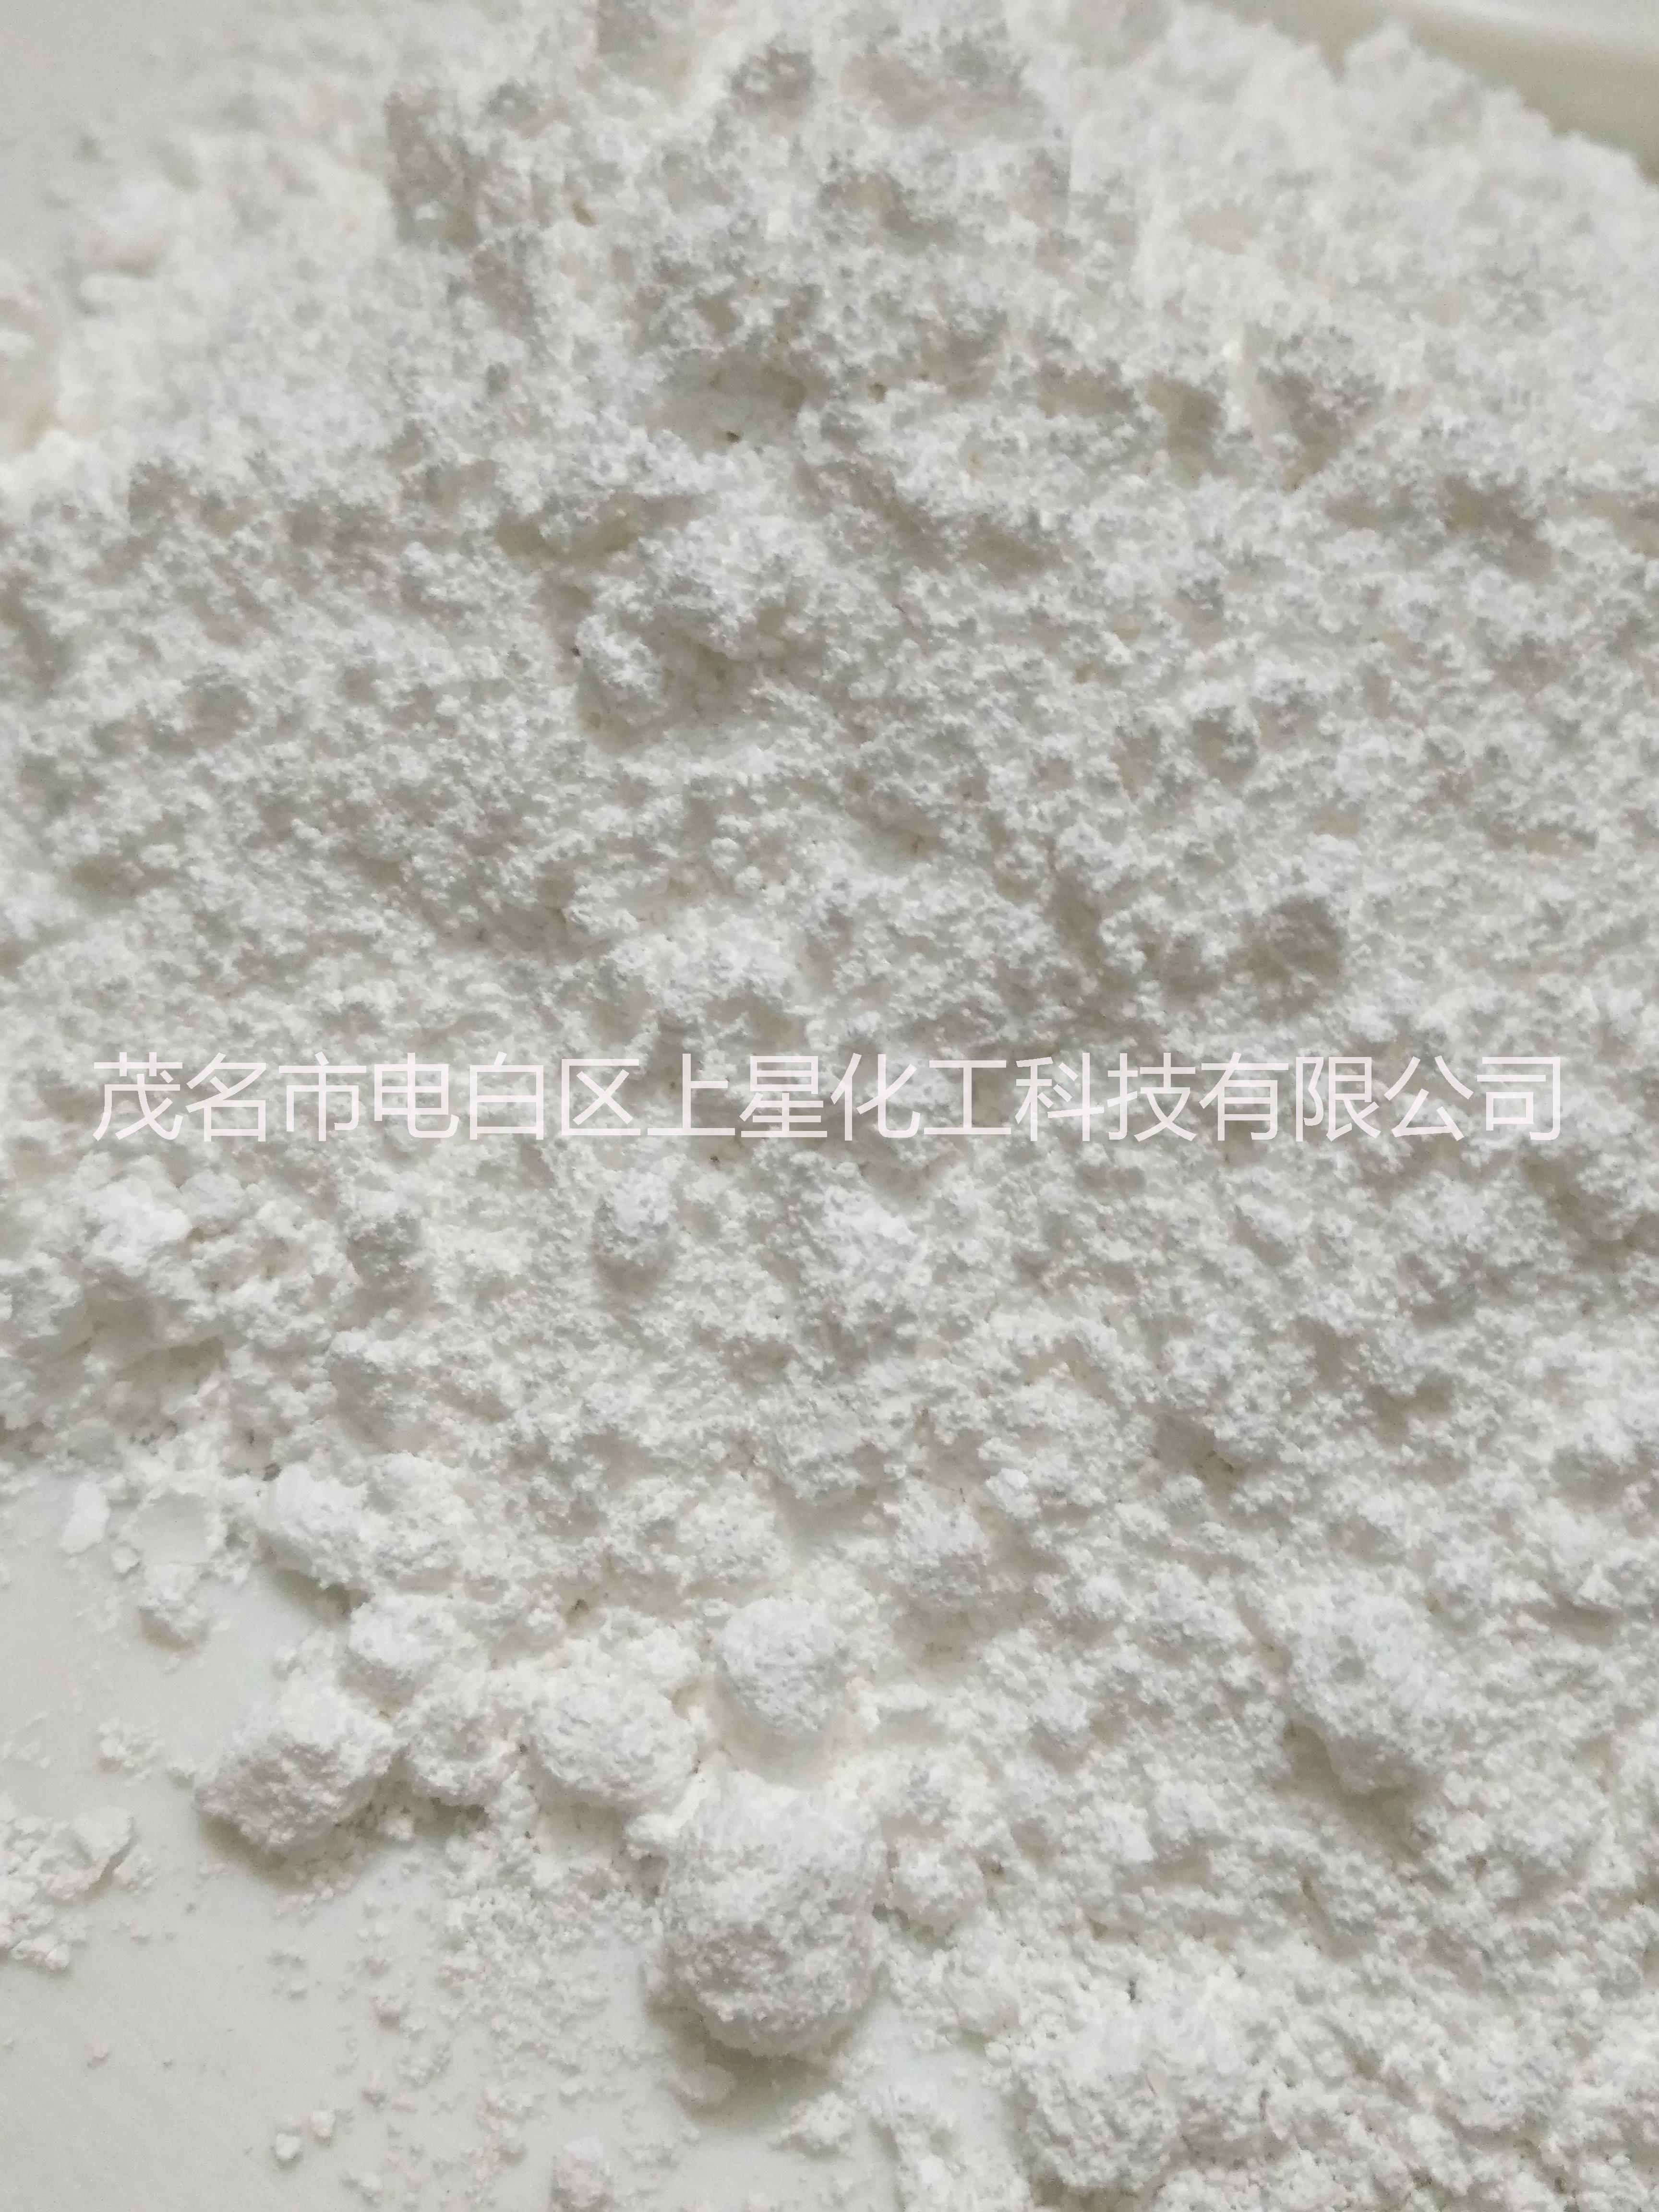 HS-KS-150纳米碳酸钙 密封胶专用纳米碳酸钙 涂料专用纳米碳酸钙 油墨专用纳米碳酸钙